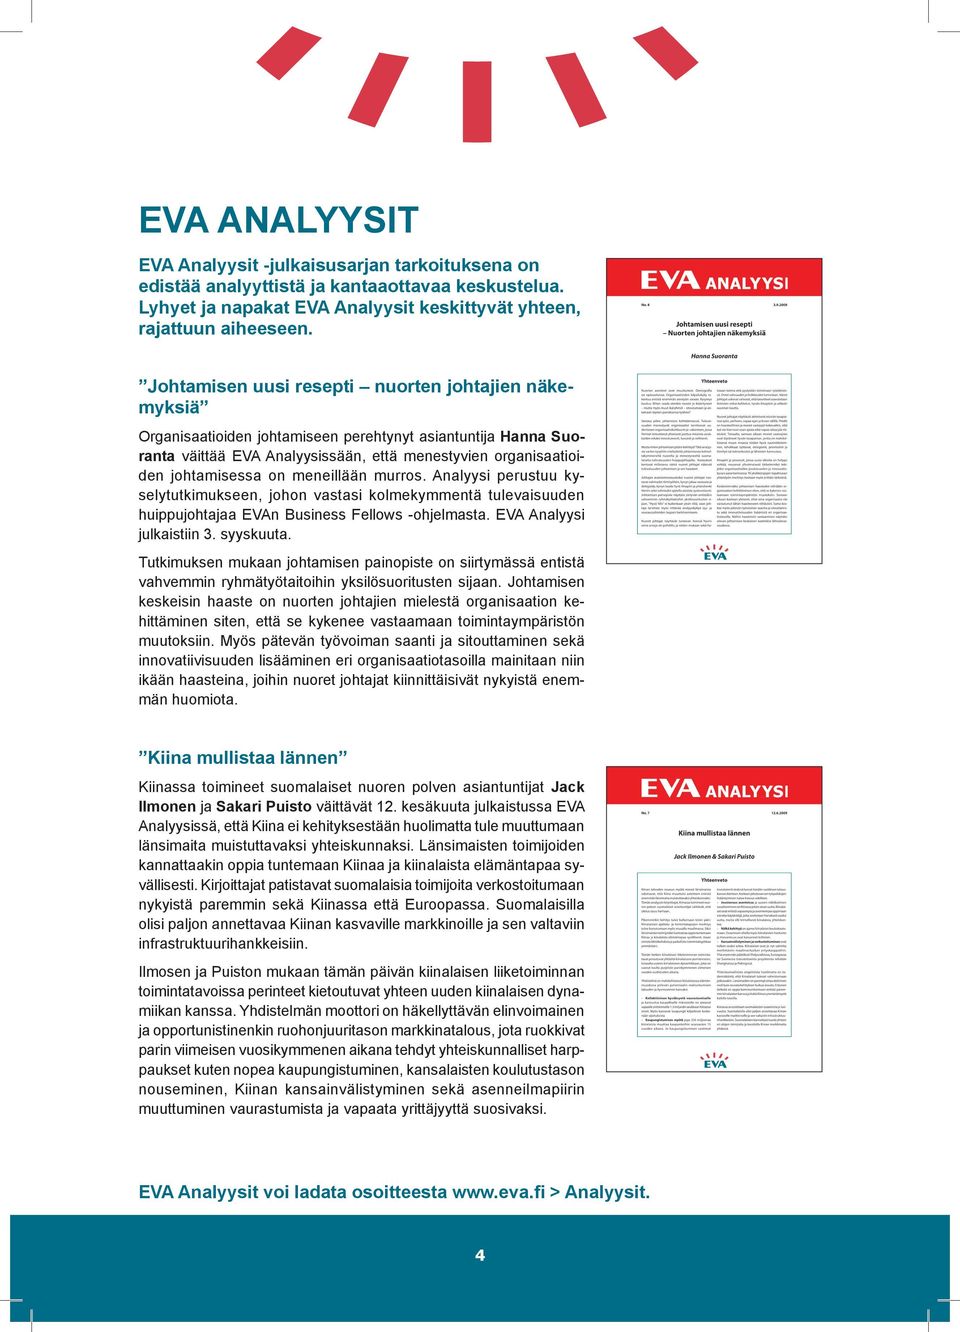 meneillään murros. Analyysi perustuu kyselytutkimukseen, johon vastasi kolmekymmentä tulevaisuuden huippujohtajaa EVAn Business Fellows -ohjelmasta. EVA Analyysi julkaistiin 3. syyskuuta.